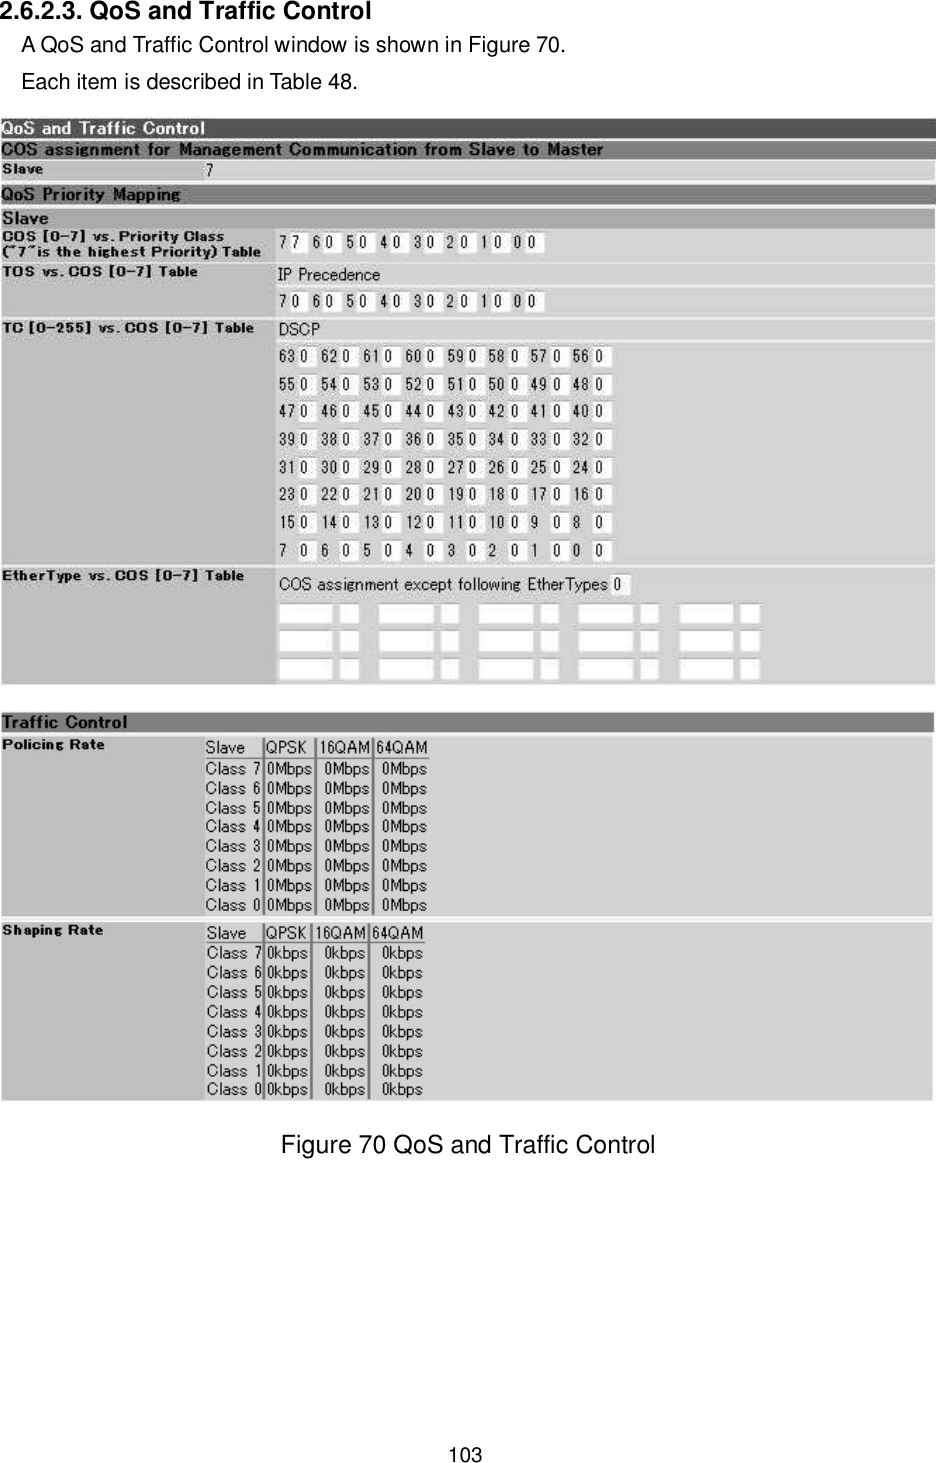    103  2.6.2.3. QoS and Traffic Control A QoS and Traffic Control window is shown in Figure 70. Each item is described in Table 48.  Figure 70 QoS and Traffic Control  